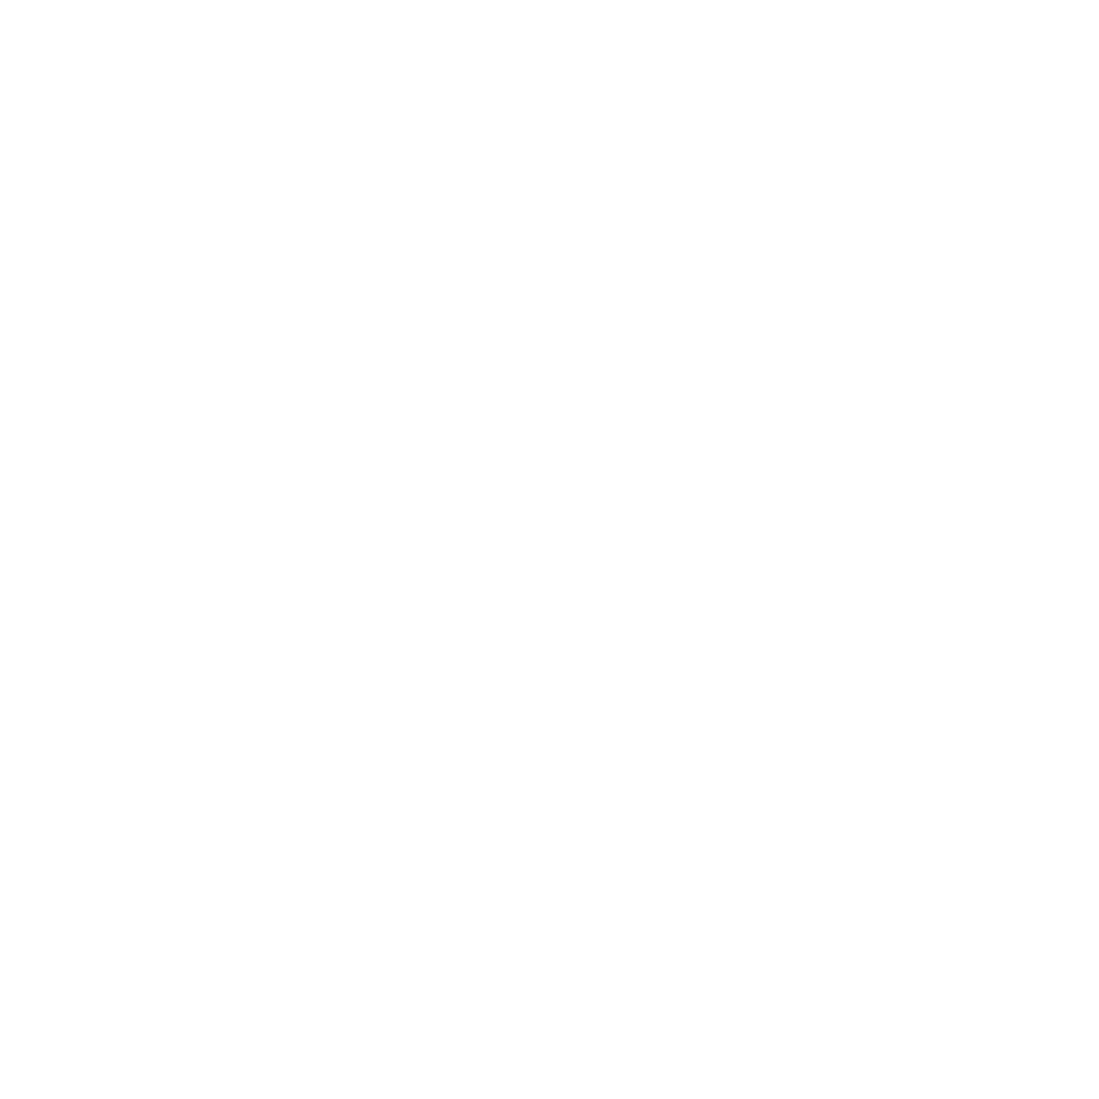 スマホ版モーション画像の上にのるK-Loungeのロゴ